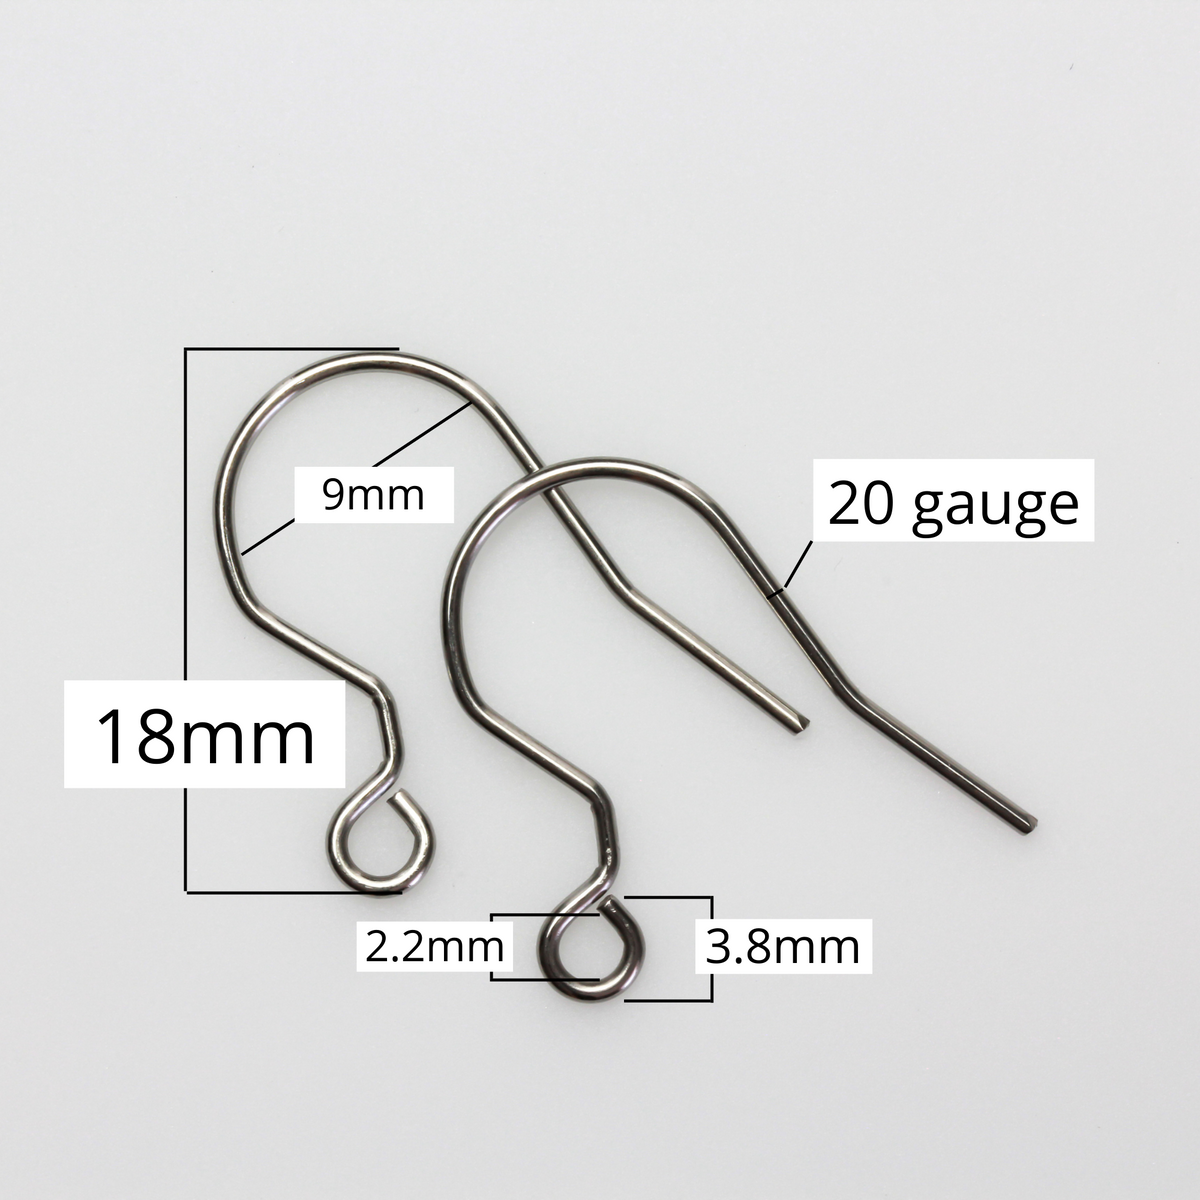 Stainless Steel Earring Hooks with Horizontal Loop - 22 gauge, 30